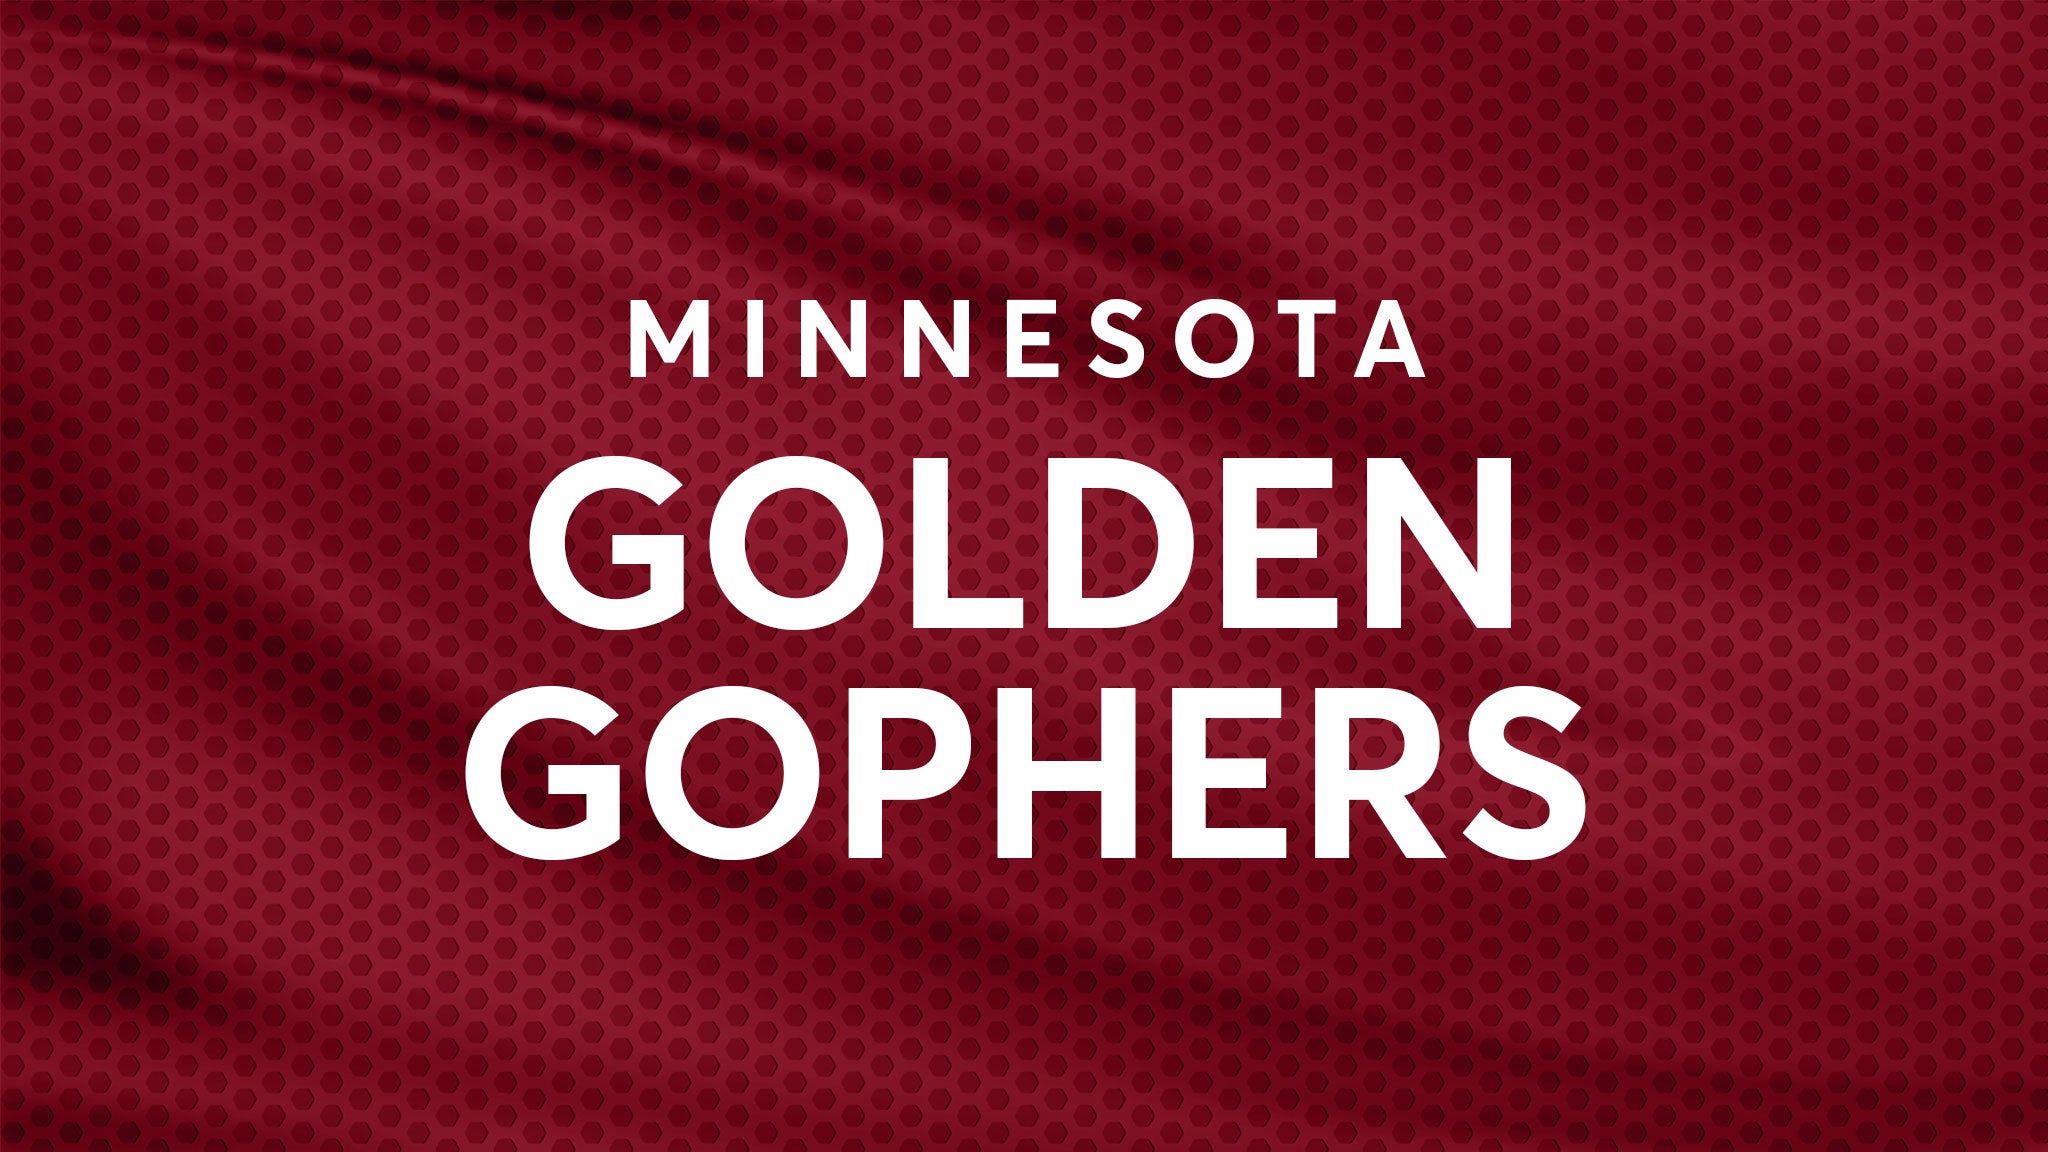 Minnesota Gophers Football vs. Nevada Wolfpack Football hero